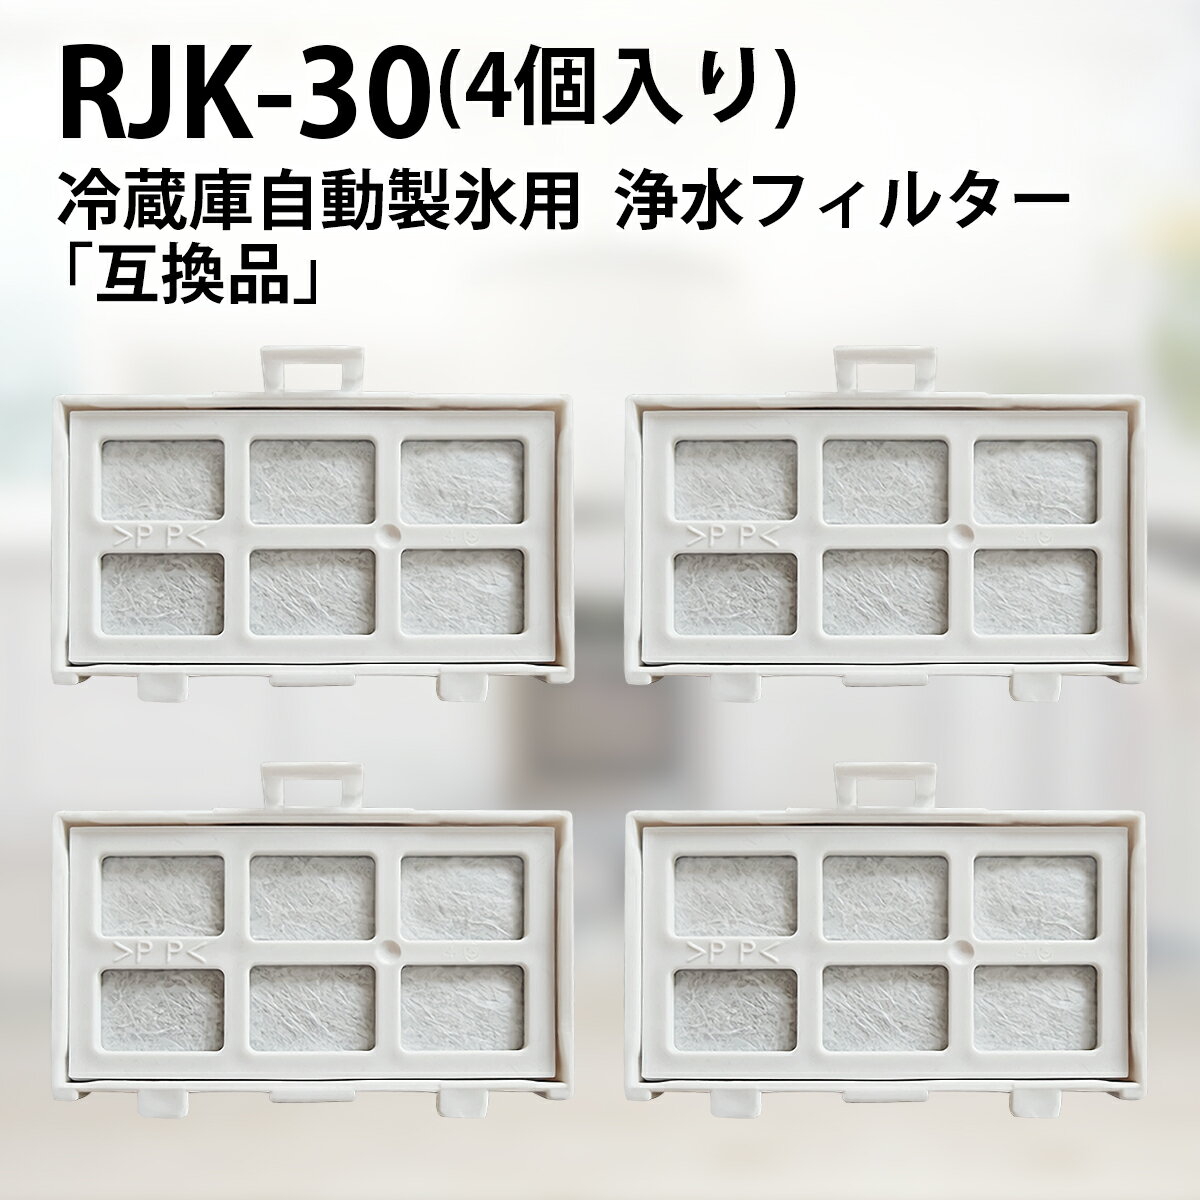 rjk-30 冷蔵庫 製氷機フィルター 浄水フィルター RJK-30 日立冷凍冷蔵庫 自動製氷用 交換フィルター (4個入り/互換品)